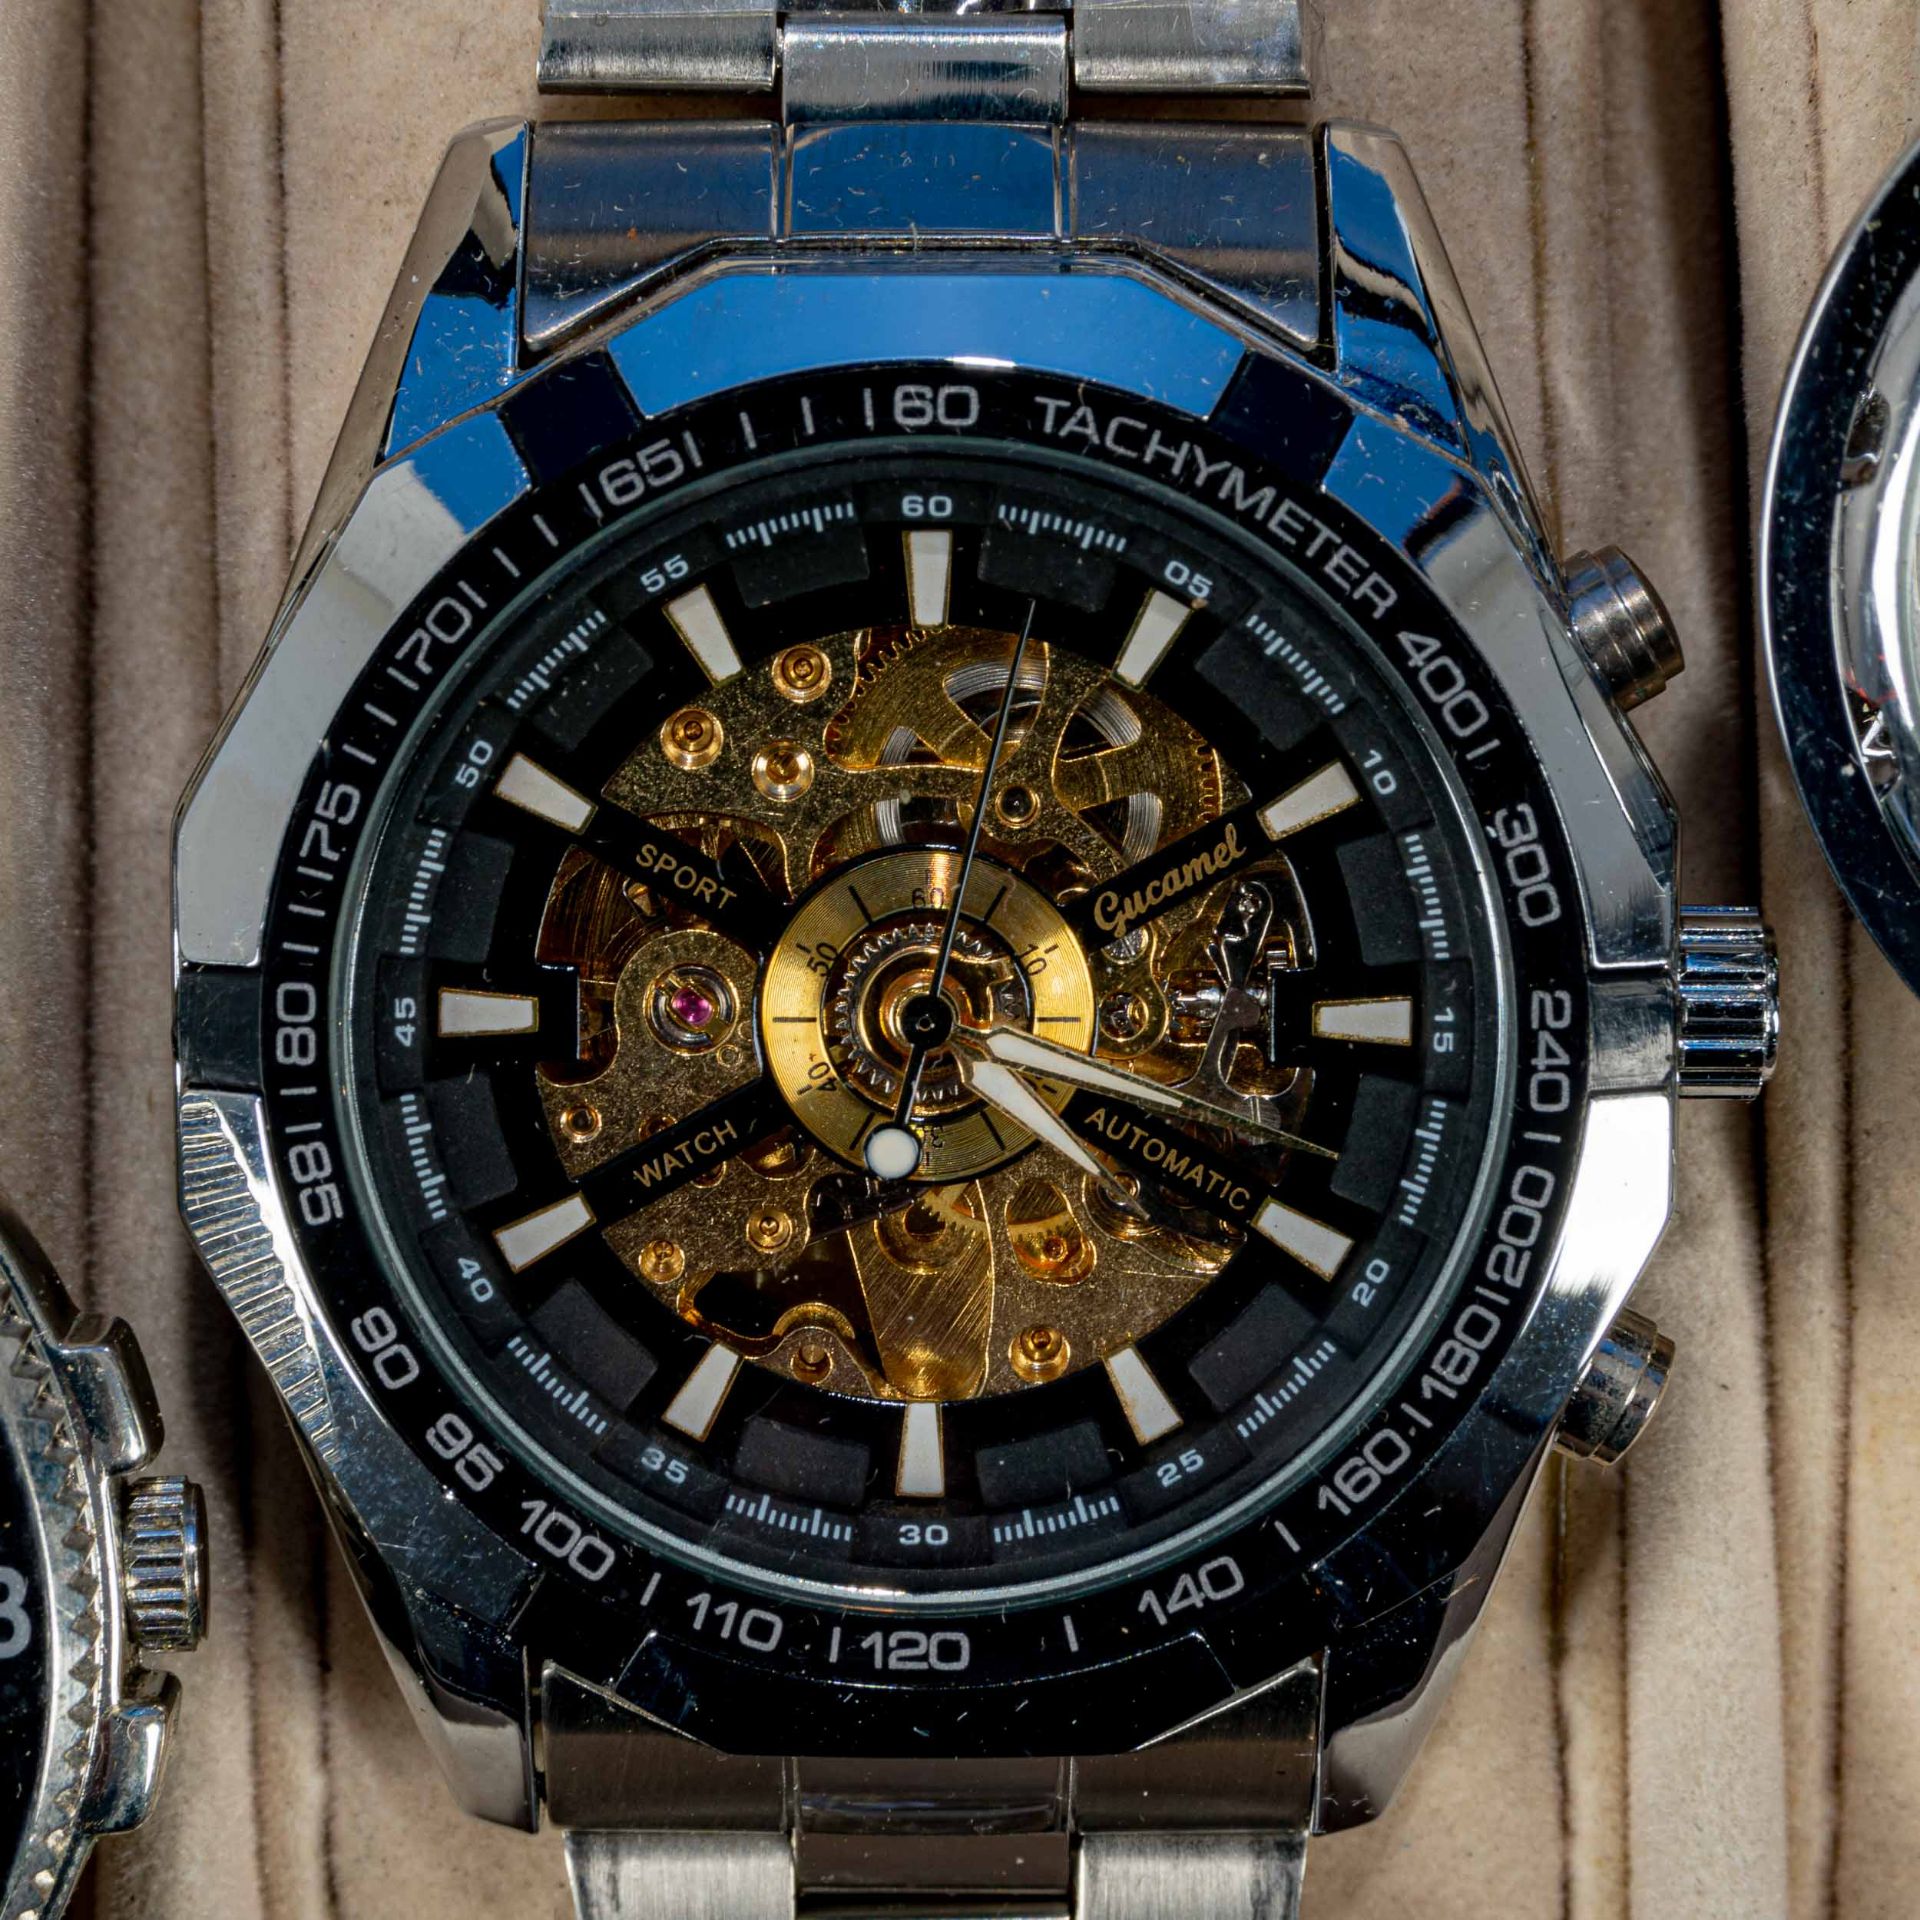 7teilige Uhrensammlung, u. a. der Marke Swatch; versch. Alter, Größen, Materialien, Hersteller, Wer - Bild 3 aus 8